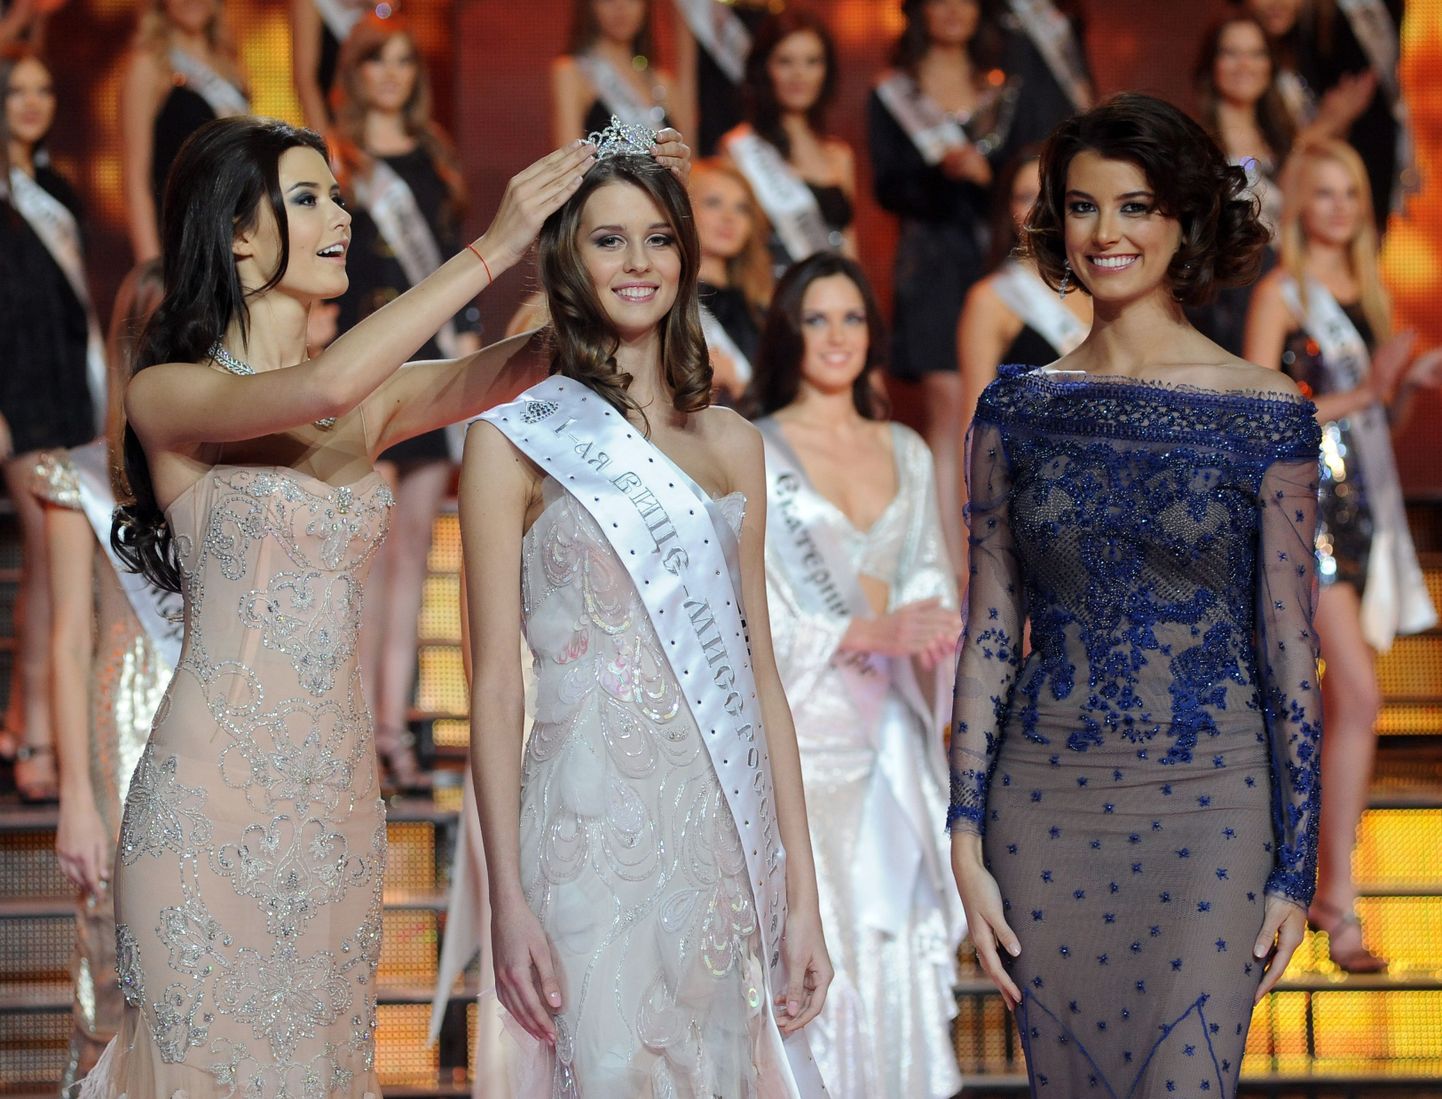 Короны 1-ой вице-мисс России на конкурсе "Мисс Россия - 2010" удостаивается Ирина Шарипова.